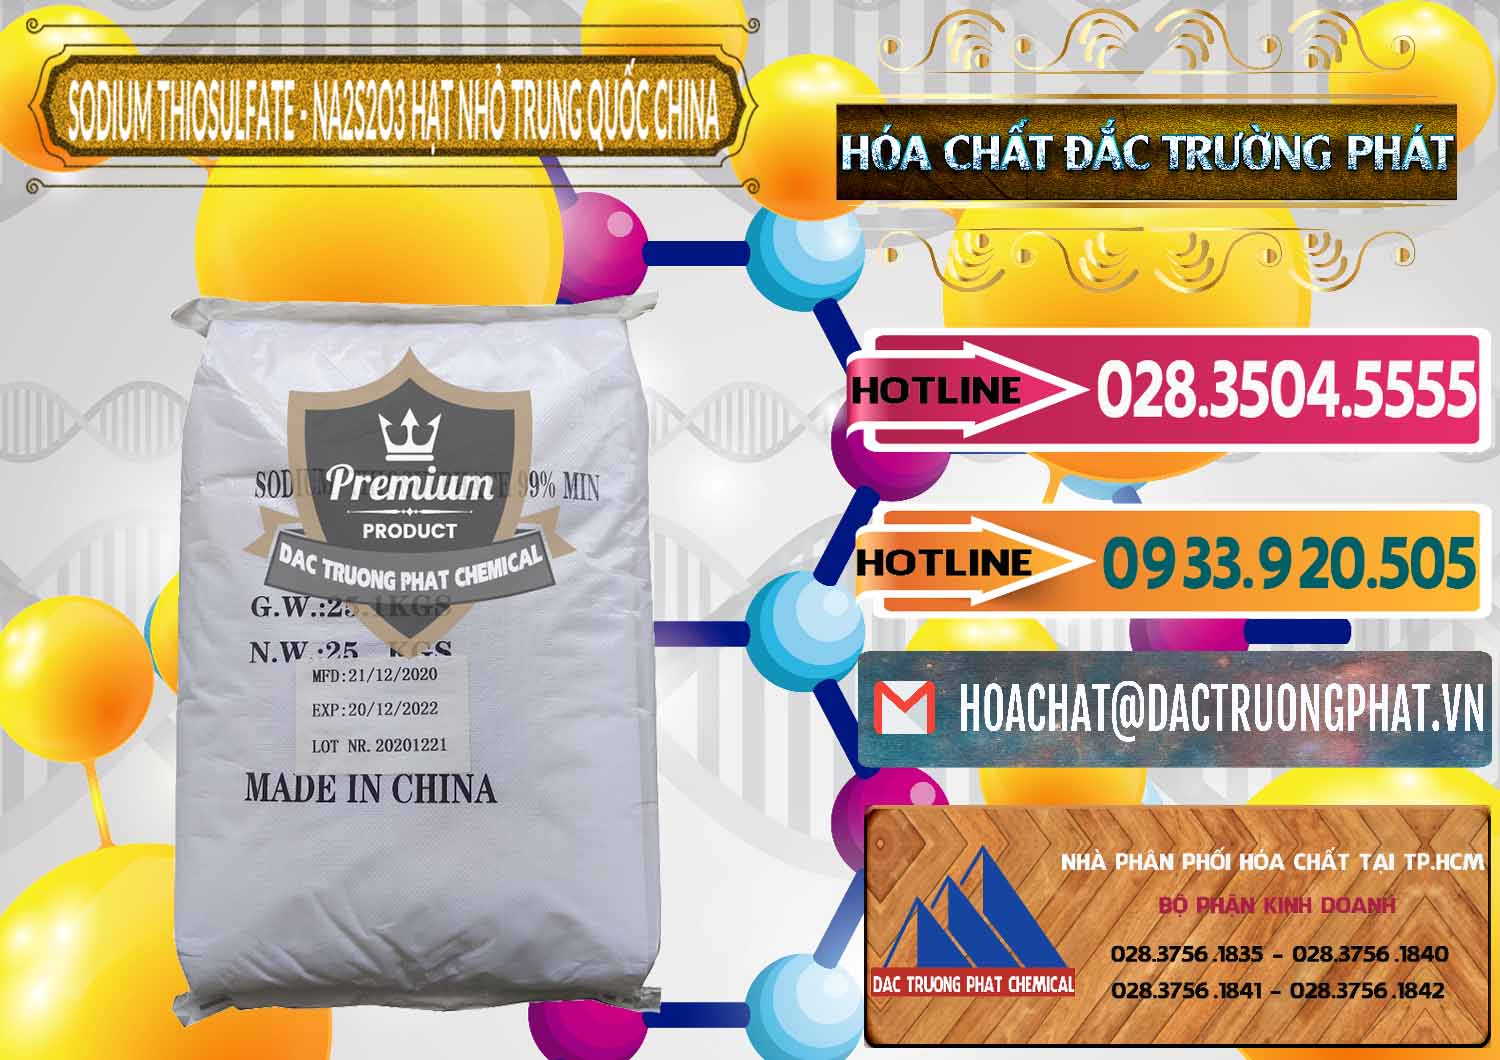 Cty chuyên bán ( cung ứng ) Sodium Thiosulfate - NA2S2O3 Hạt Nhỏ Trung Quốc China - 0204 - Chuyên kinh doanh _ phân phối hóa chất tại TP.HCM - dactruongphat.vn